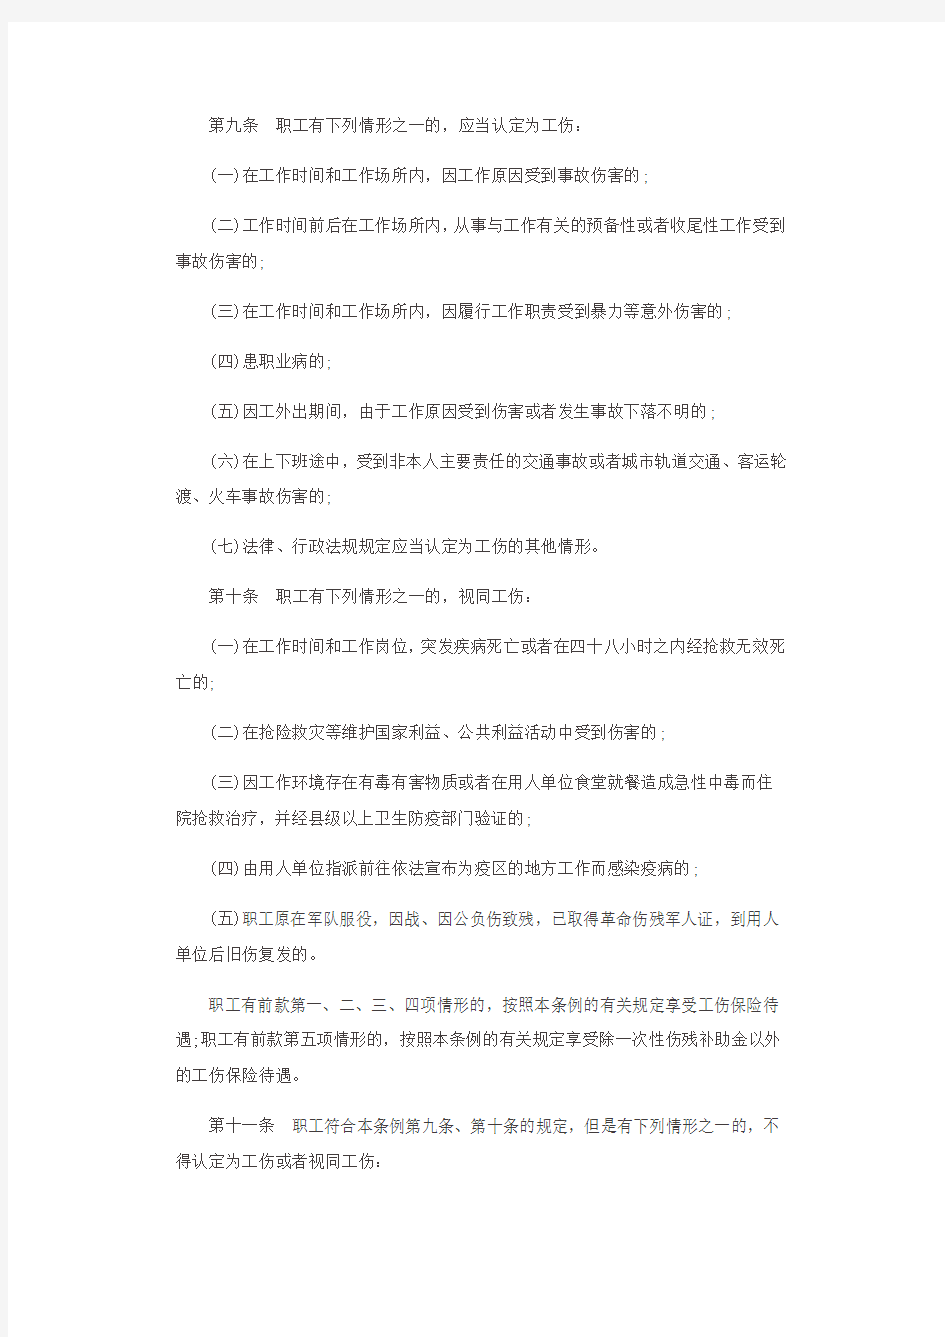 2016年最新版河北省工伤保险条例全文内容